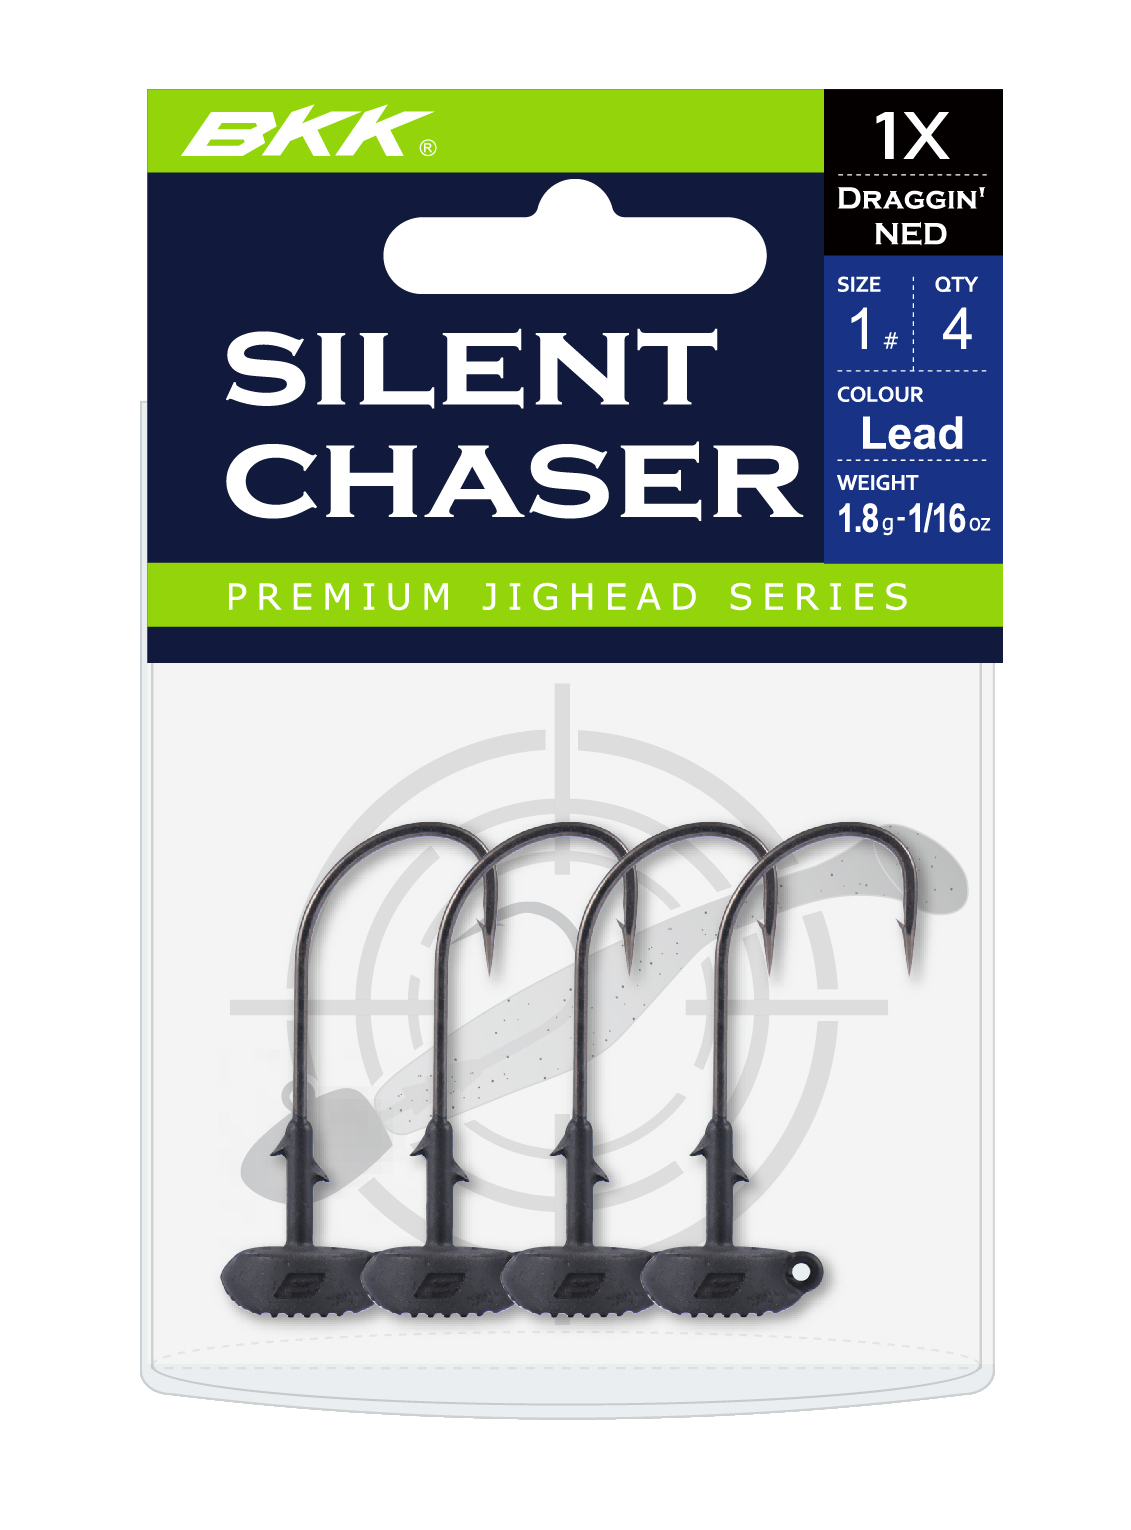 BKK Silent Chaser Draggin' NED Jighead #1 Green